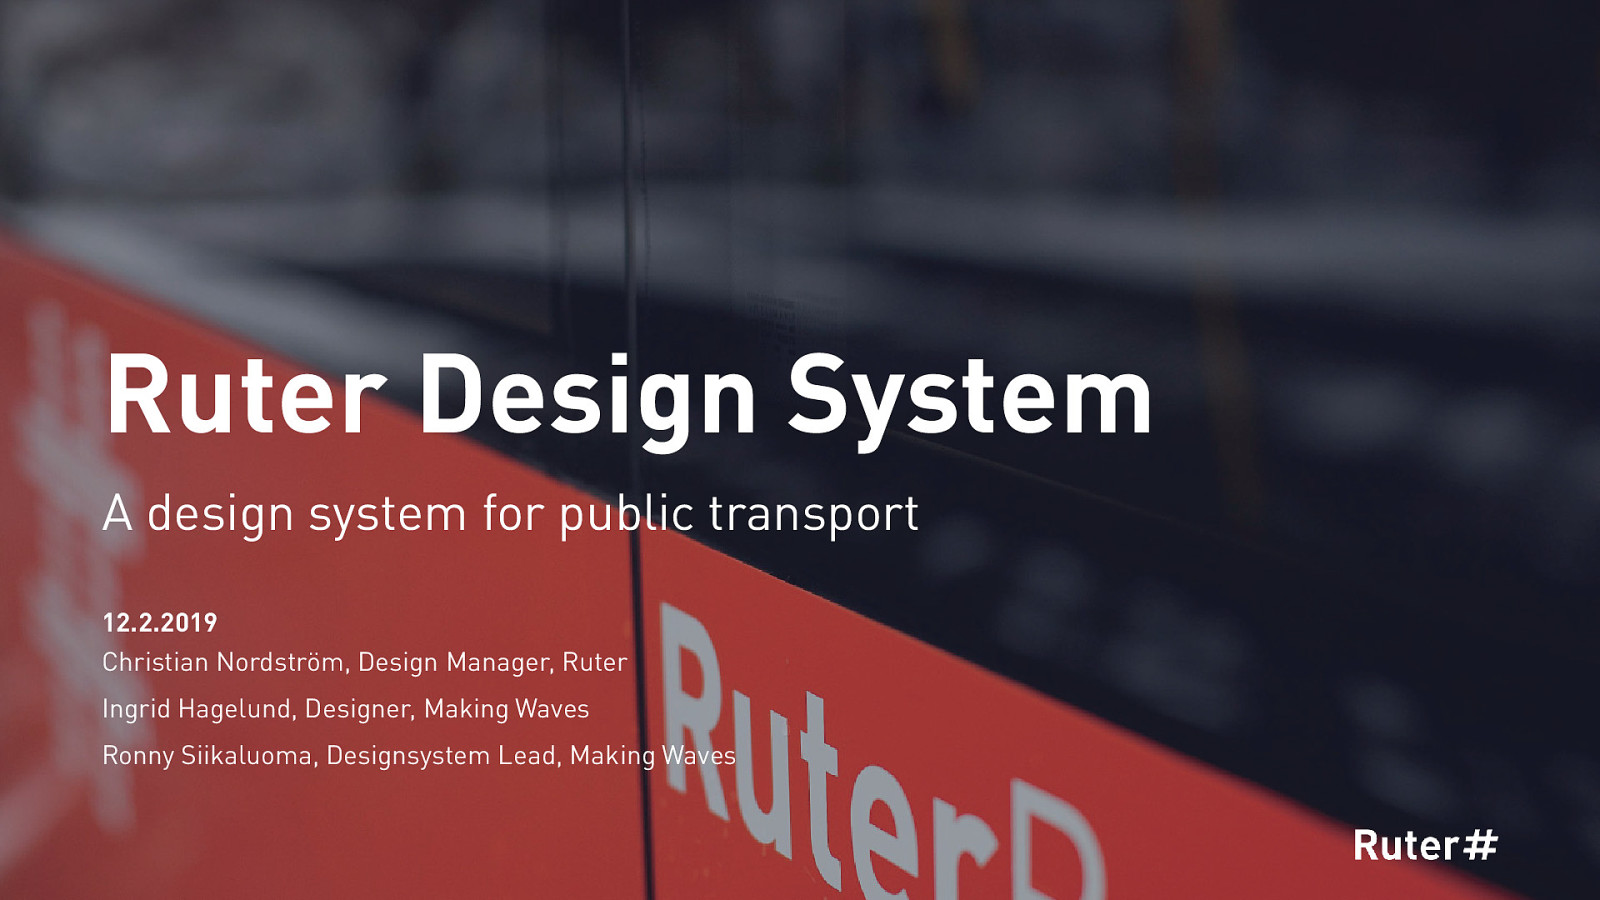 Ruter Design System - A design system for public transport